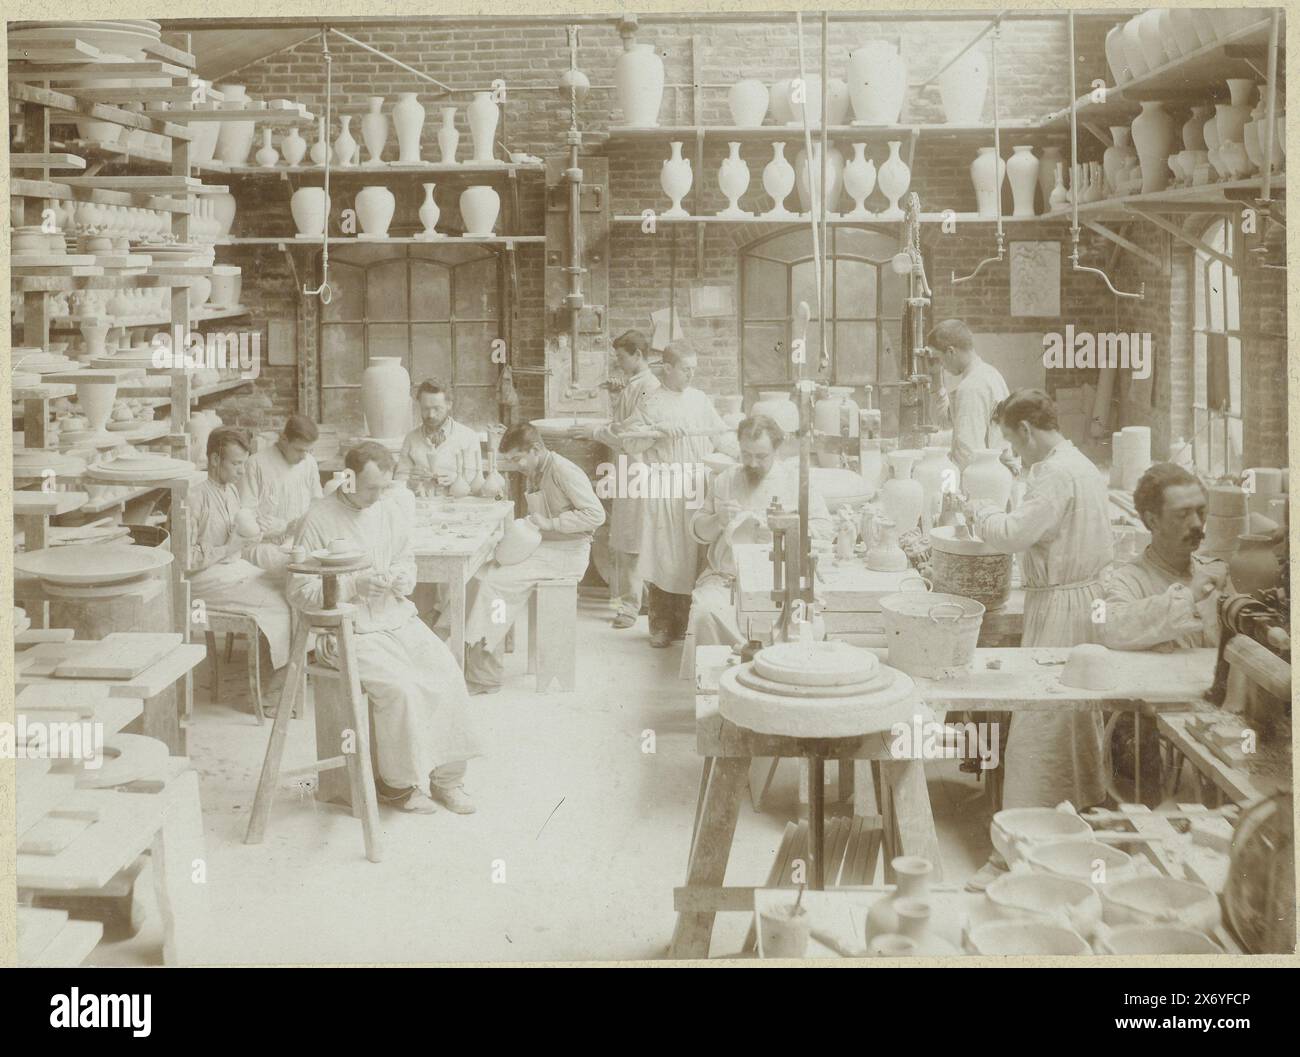 Gli uomini lavorano nel negozio di modellistica della fabbrica di porcellane di Rozenburg, fotografia, Ritscher & Landsman, (menzionato sull'oggetto), Ritscher, Landsman, l'Aia, c. 1890, carta, altezza, 166 mm x larghezza, 224 mm, altezza, 240 mm x larghezza, 331 mm Foto Stock